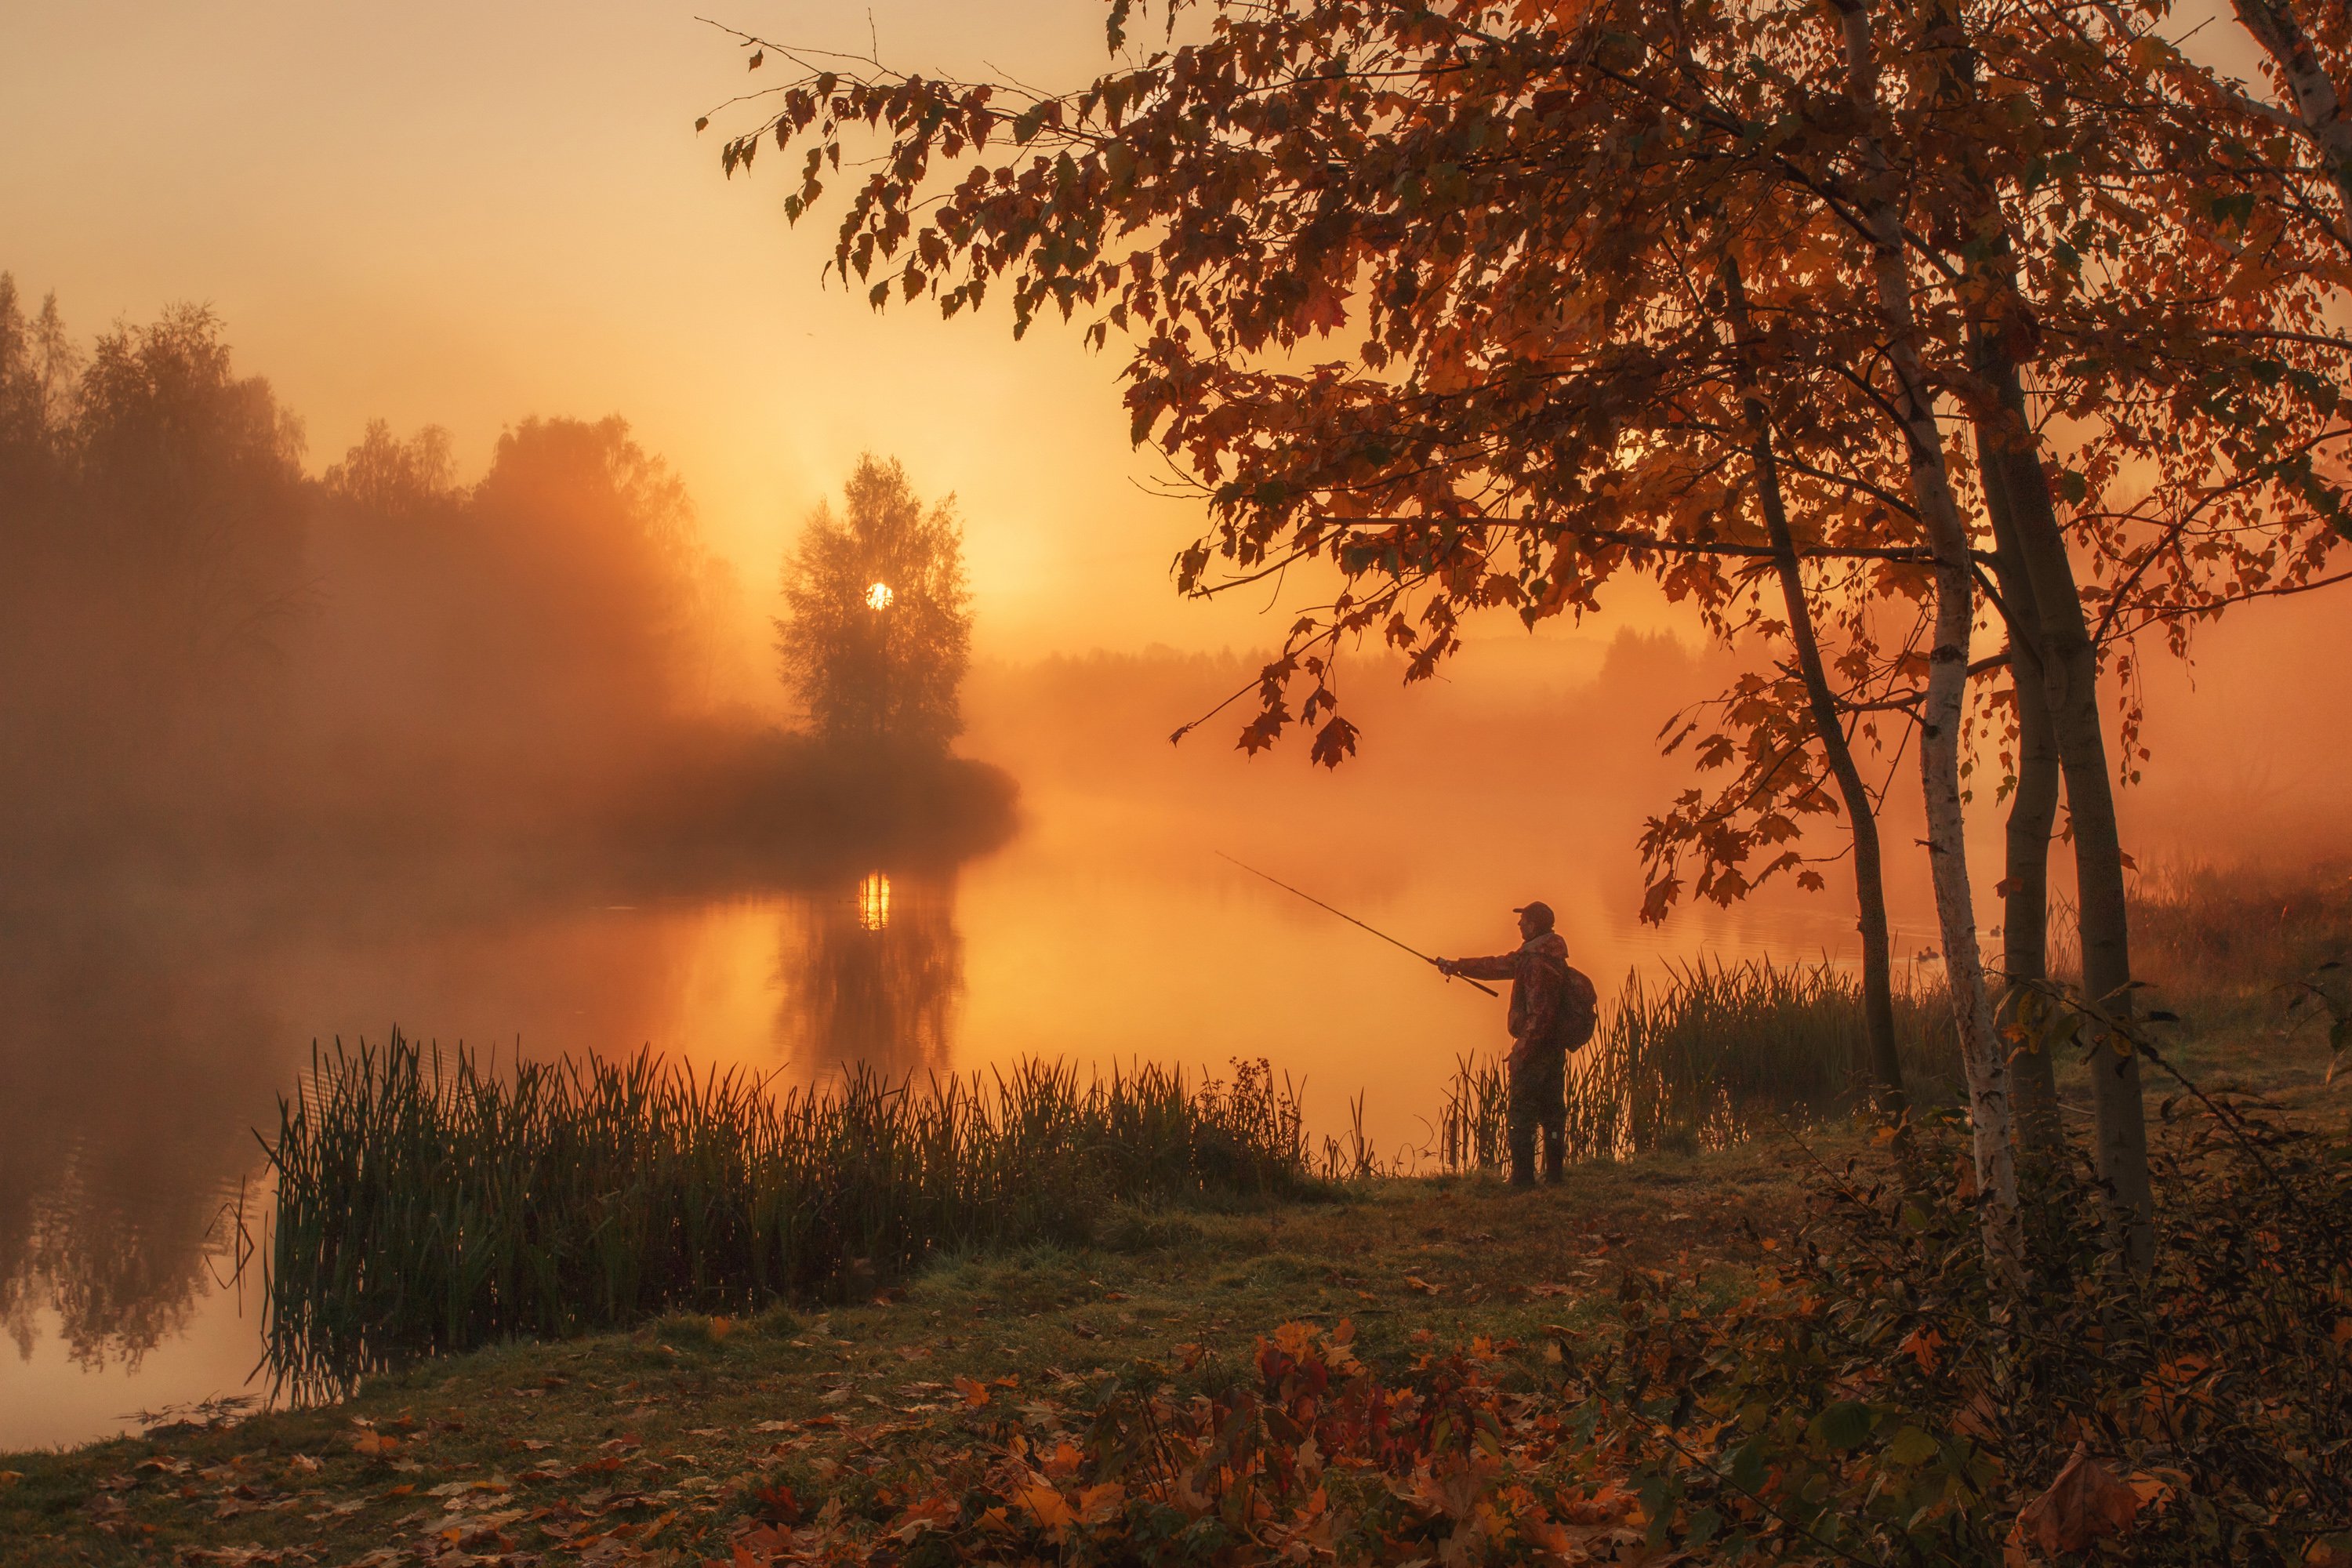 наедине c природой, утро, осень, туман, рассвет, октябрь, рыбалка, минск, беларусь, Andrey Kozlov